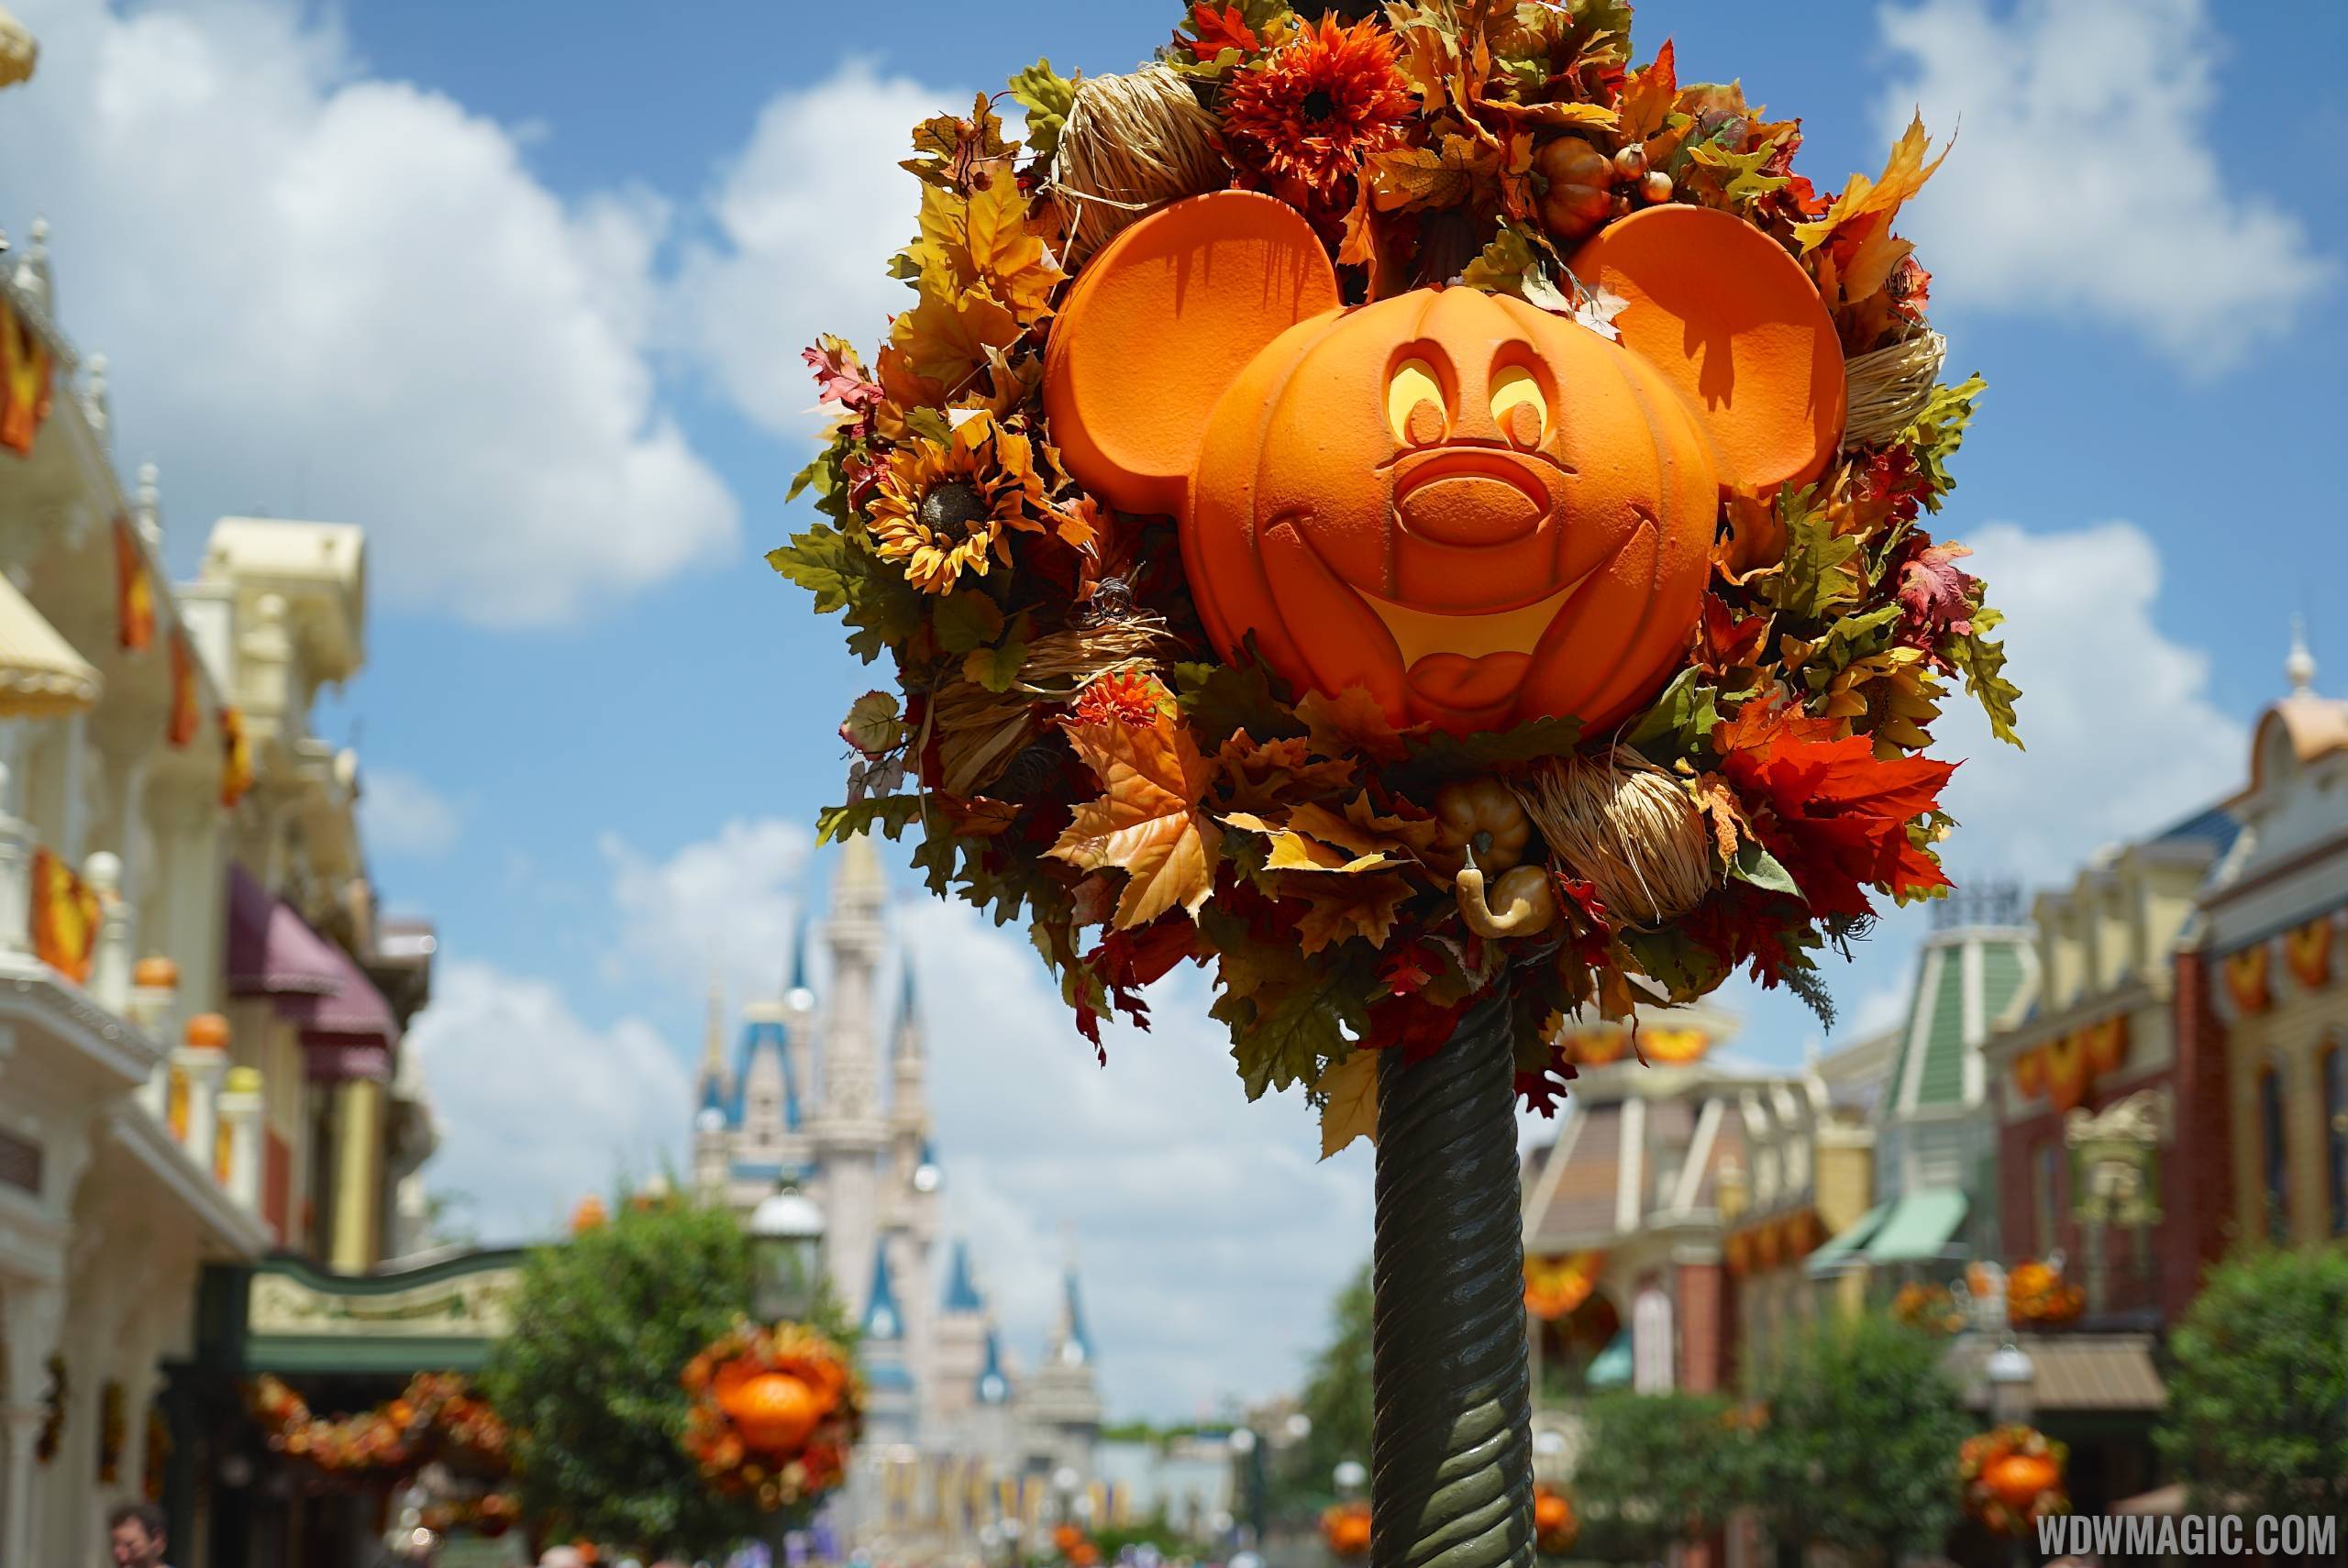 Magic Kingdom's fall Halloween decorations 2014